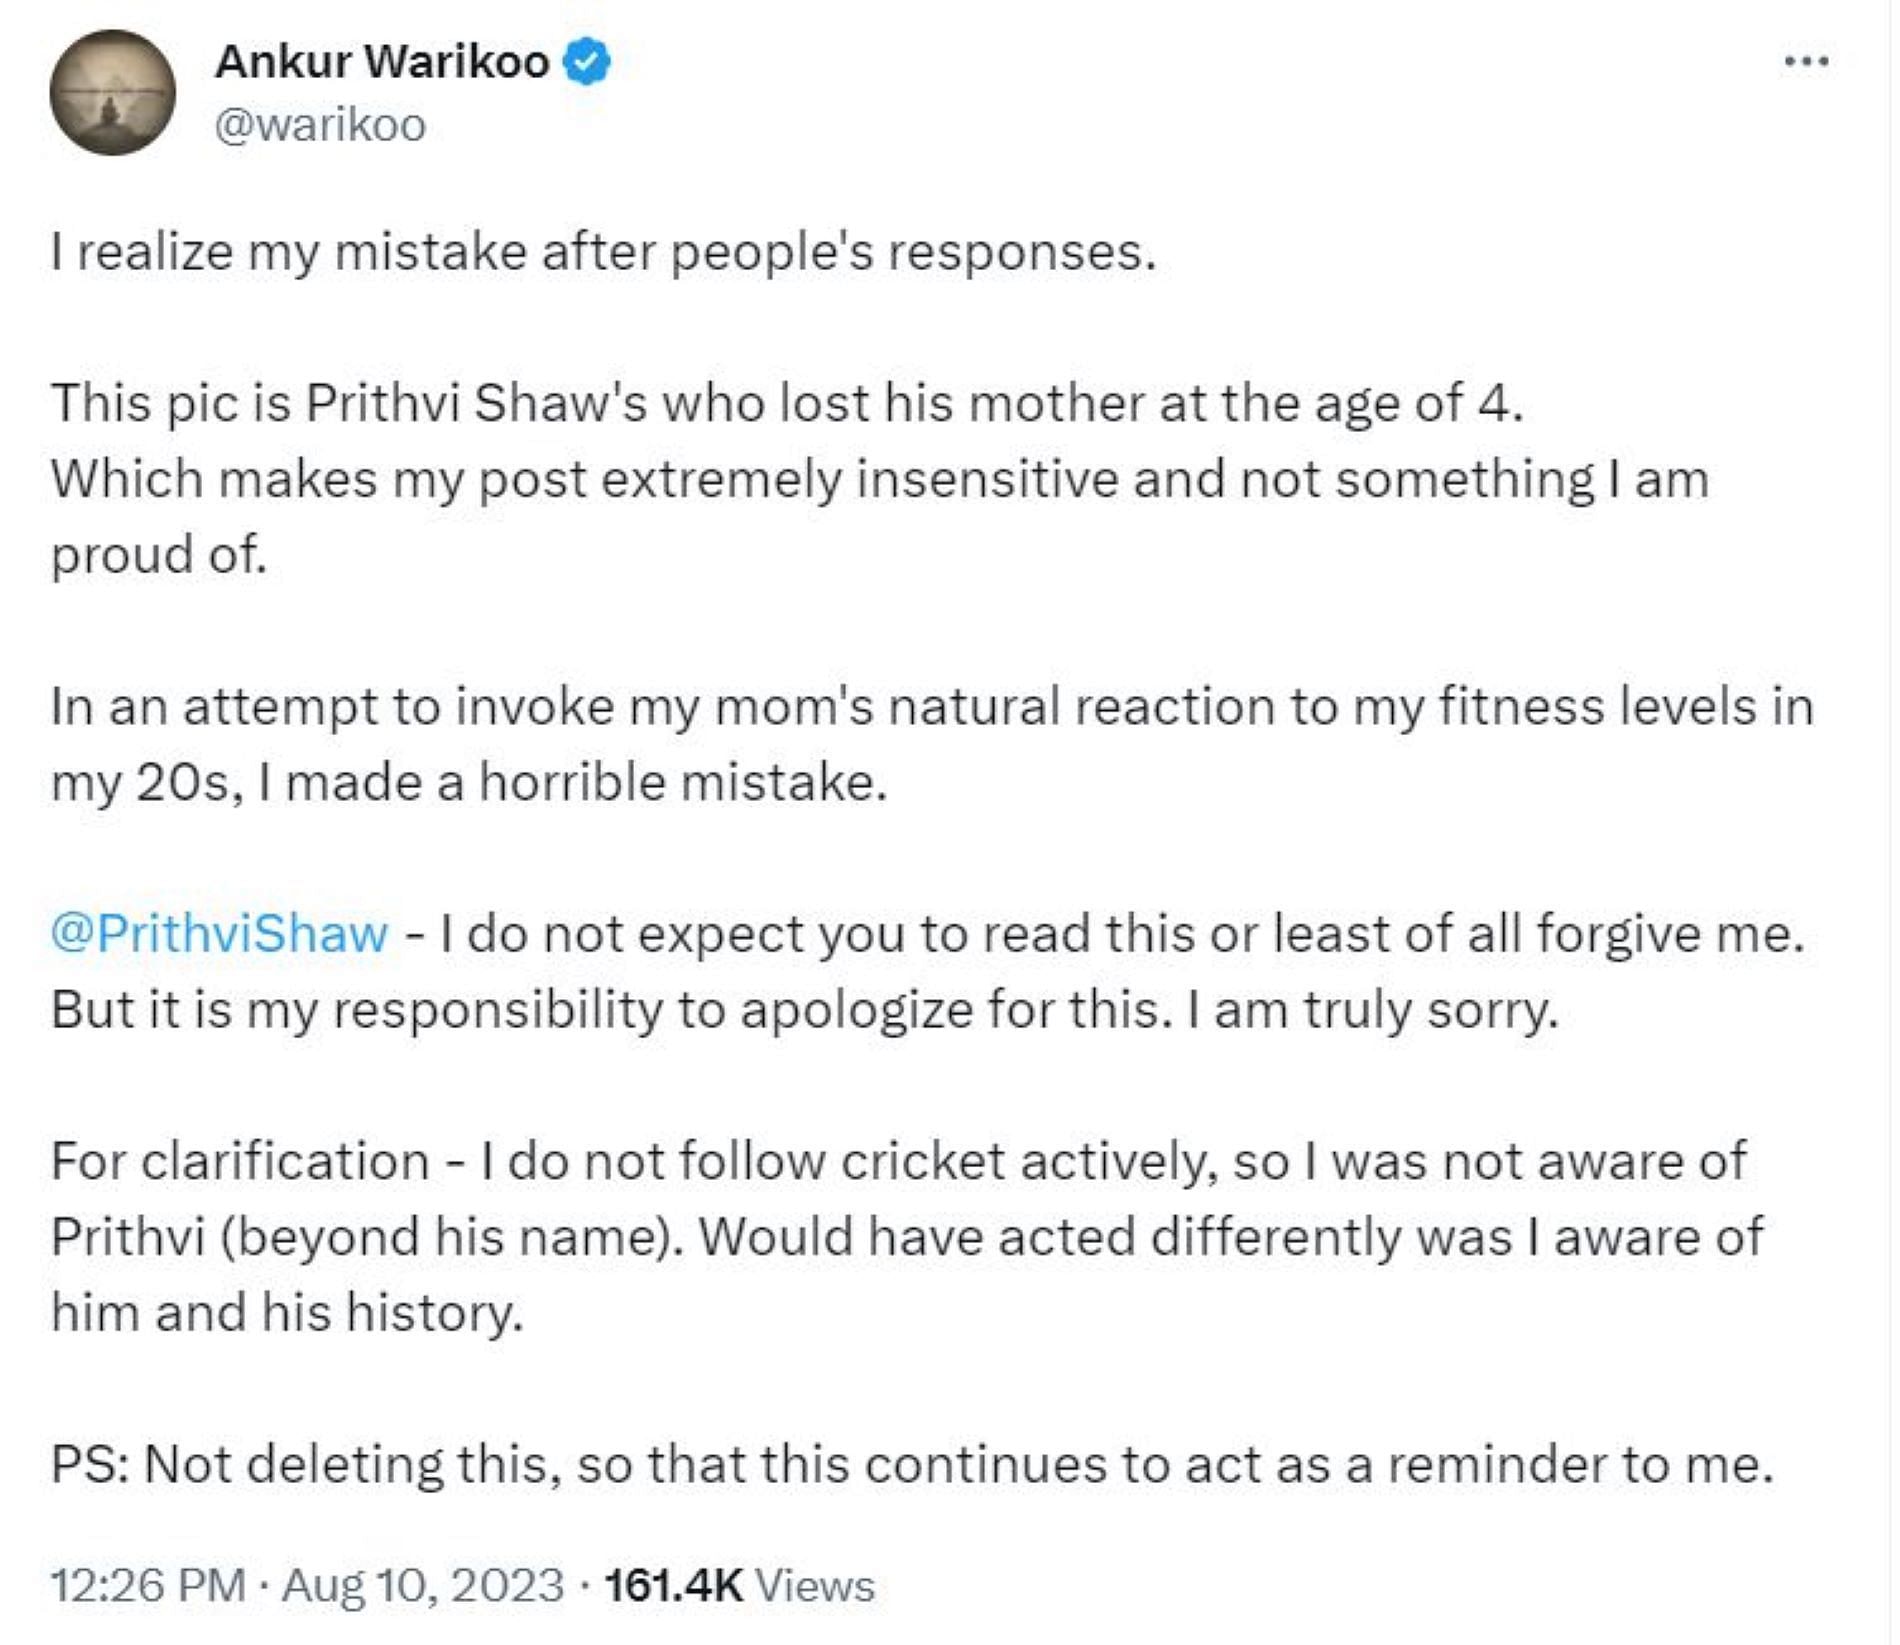 Ankur Warikoo apologizes to Prithvi Shaw for his earlier Tweet.